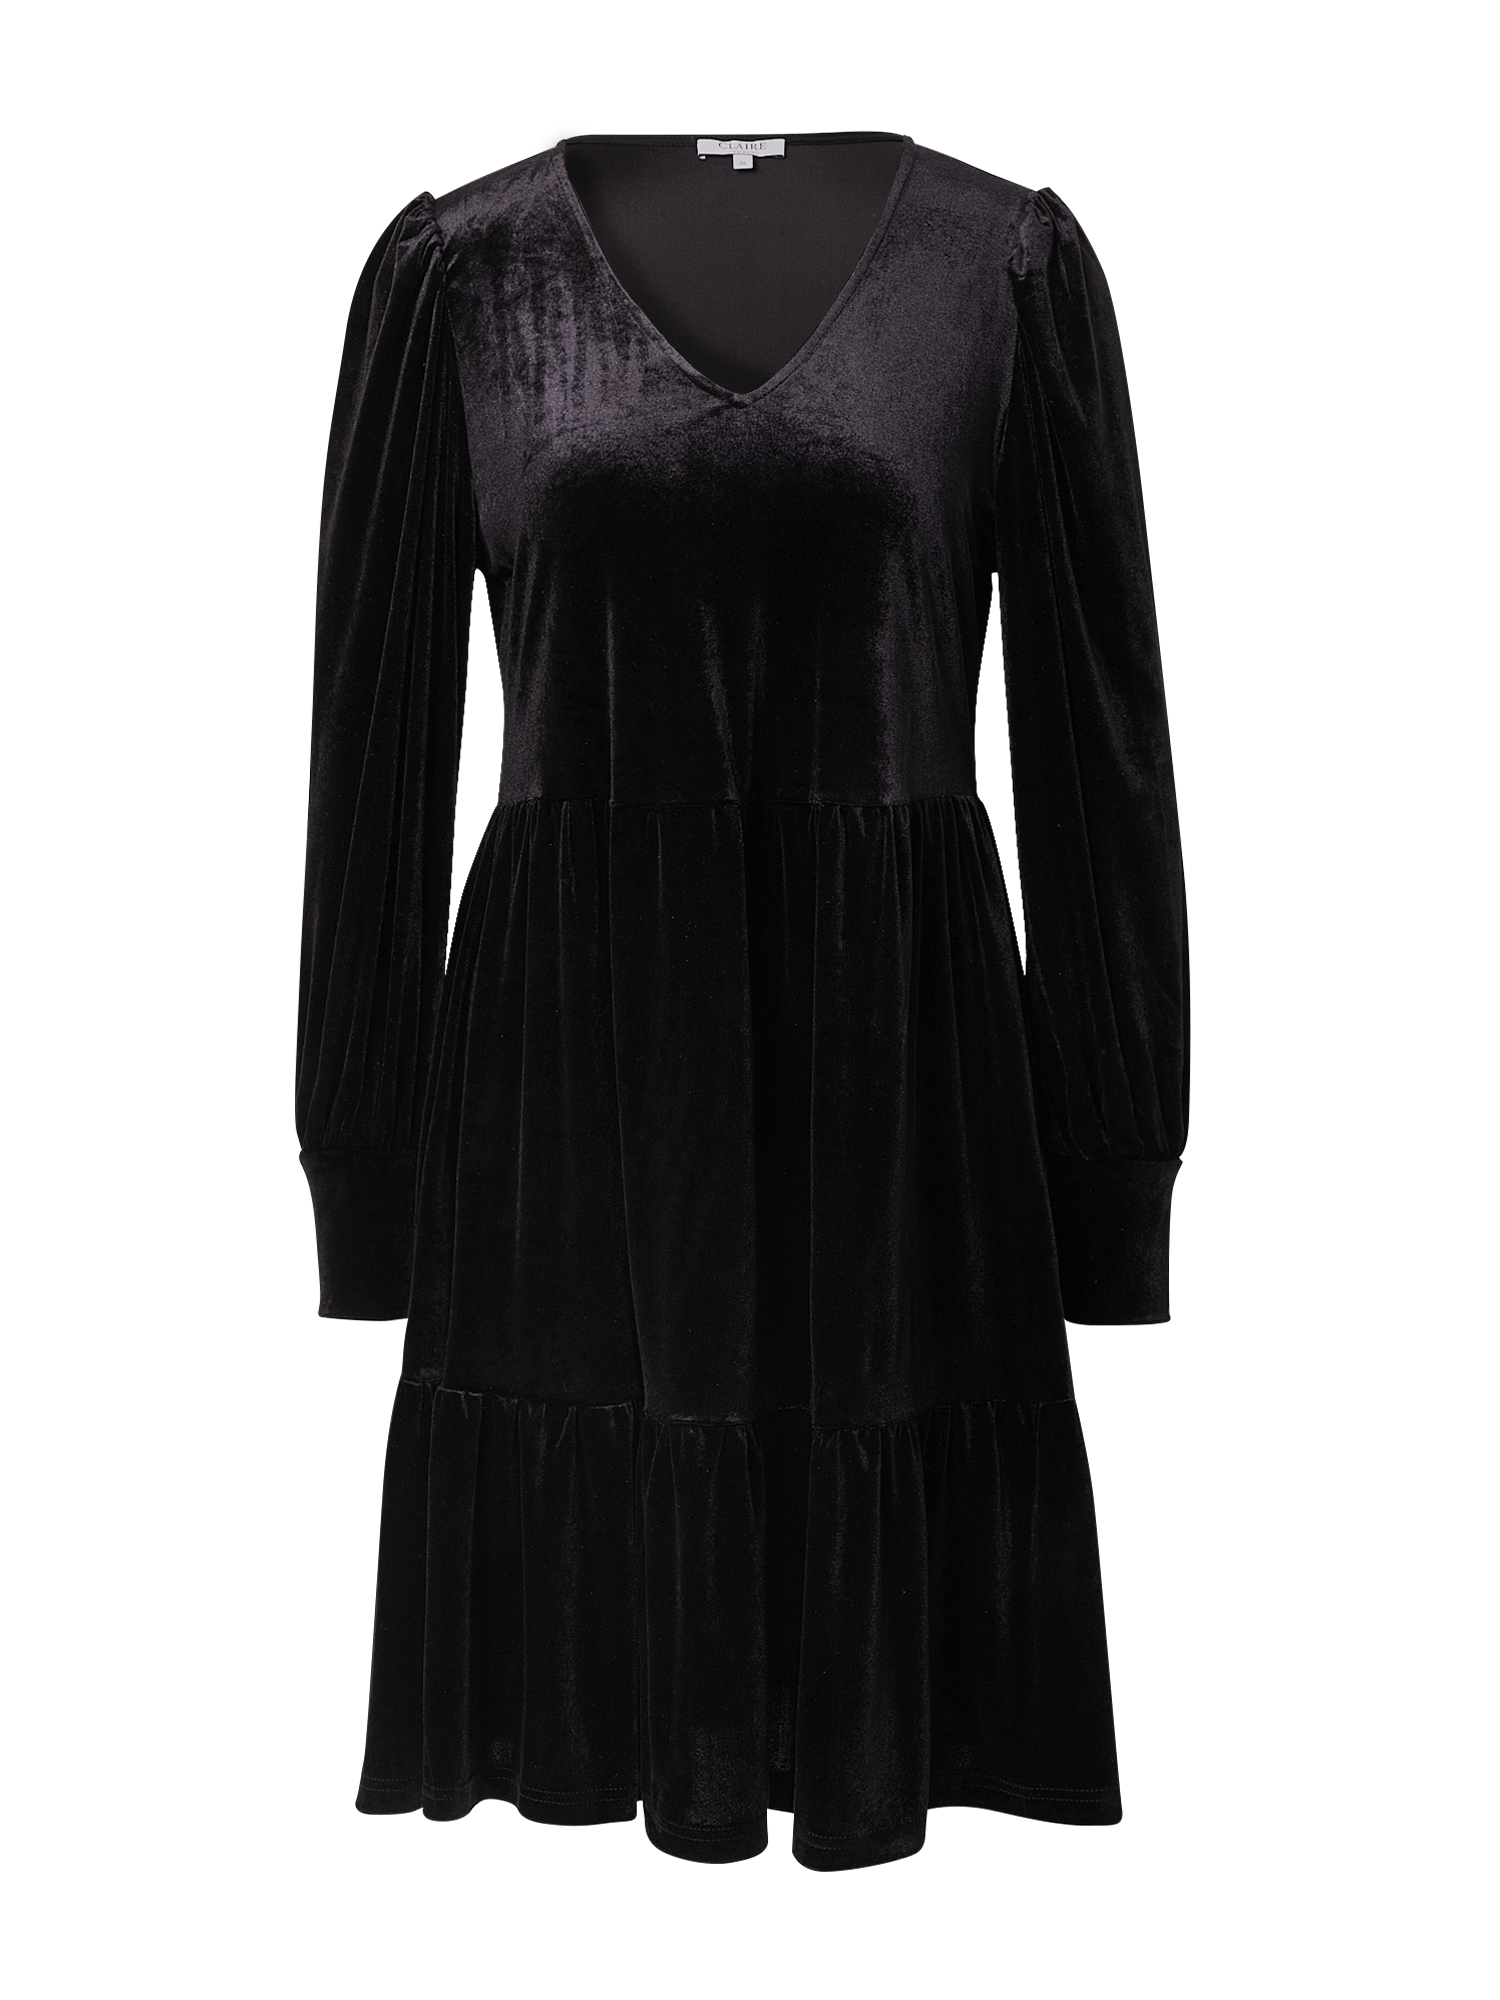 zLUYK Odzież Claire Sukienka koszulowa Djinna w kolorze Czarnym 